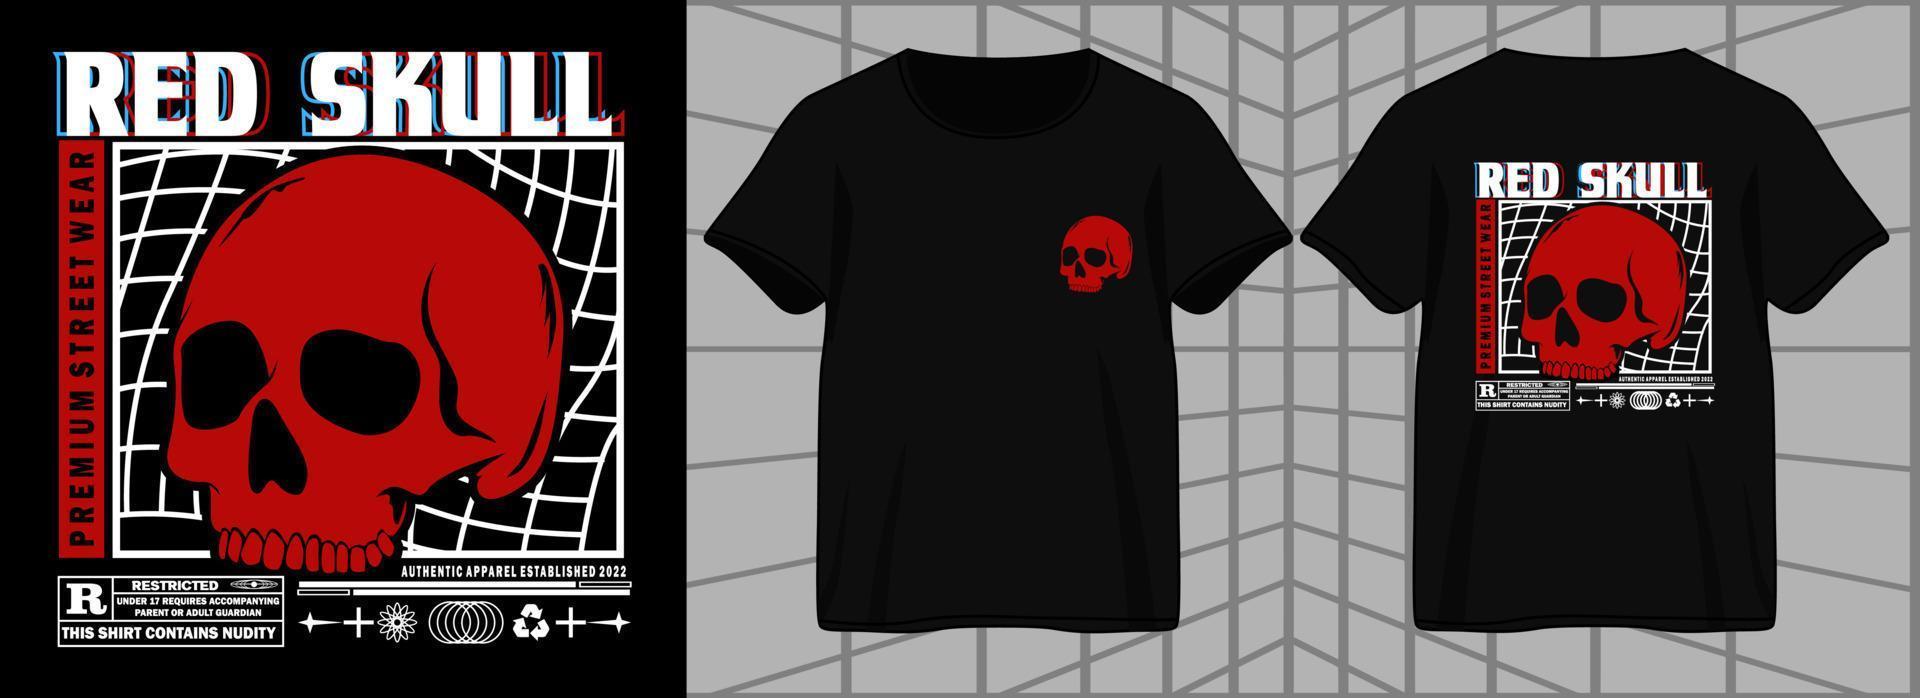 röd skalle. estetisk grafisk design för t-shirt street wear och urban stil vektor